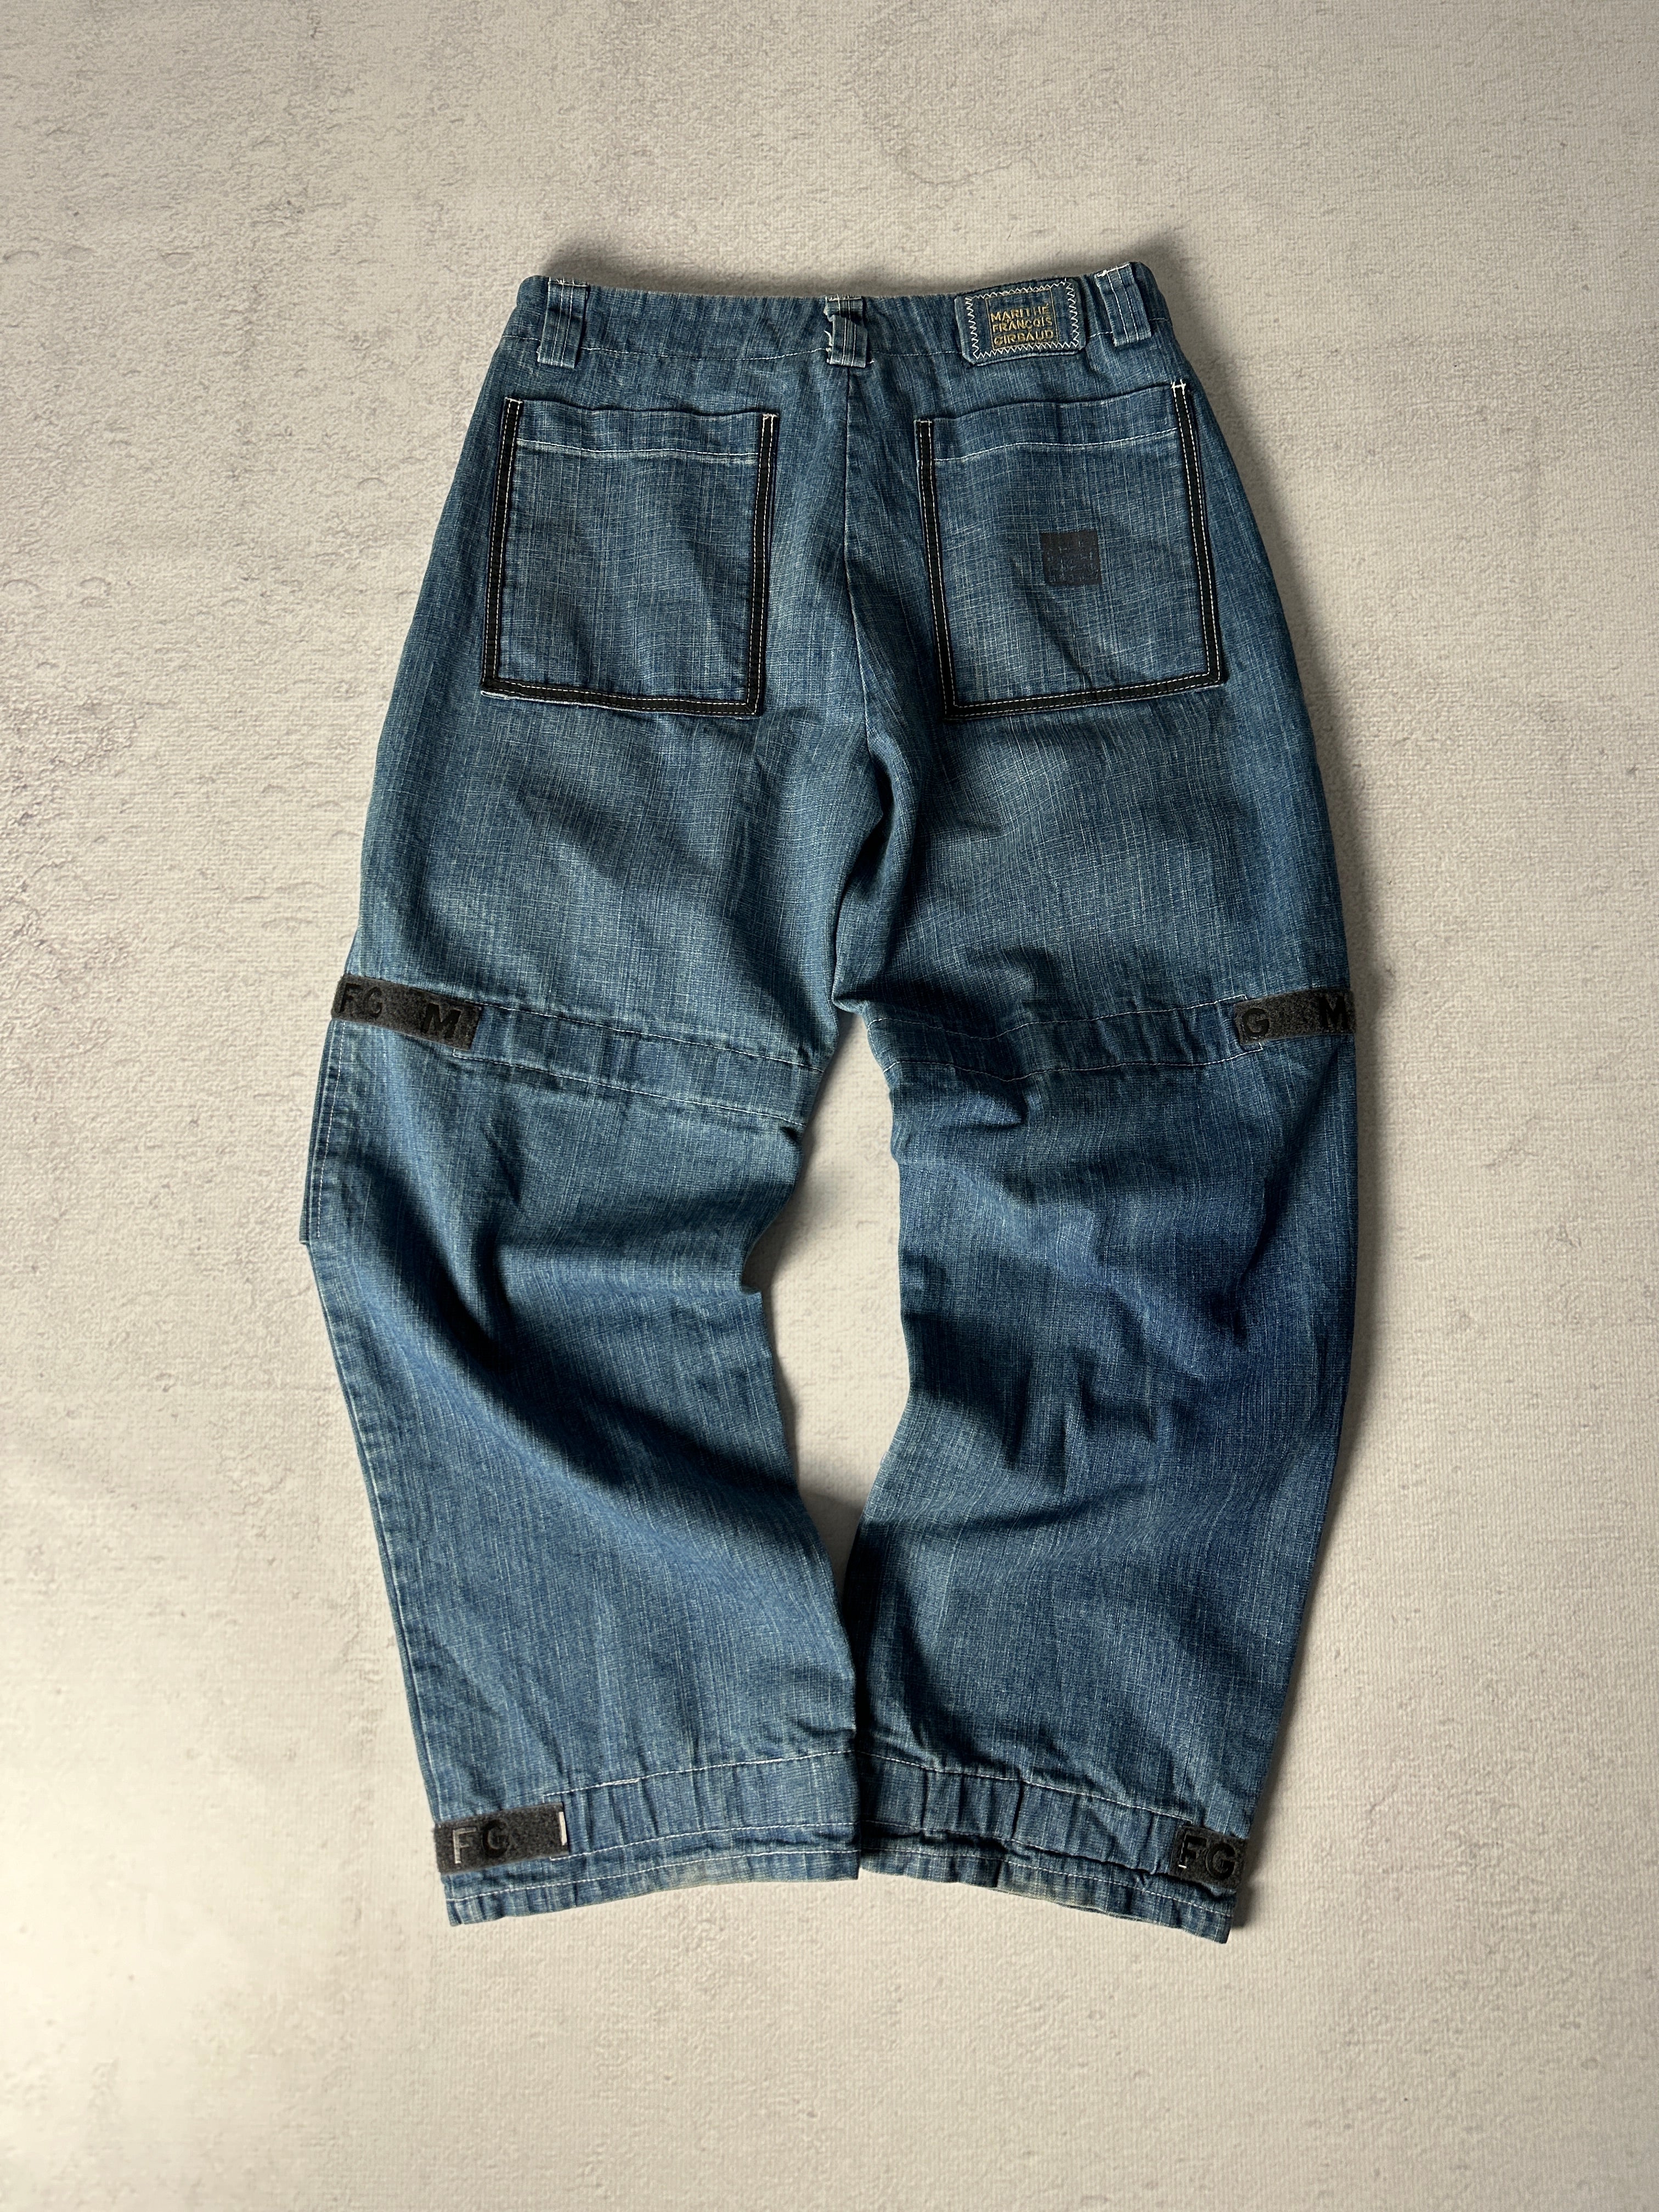 Vintage Marithe Francois Girbaud Jeans - Men's 36W32L